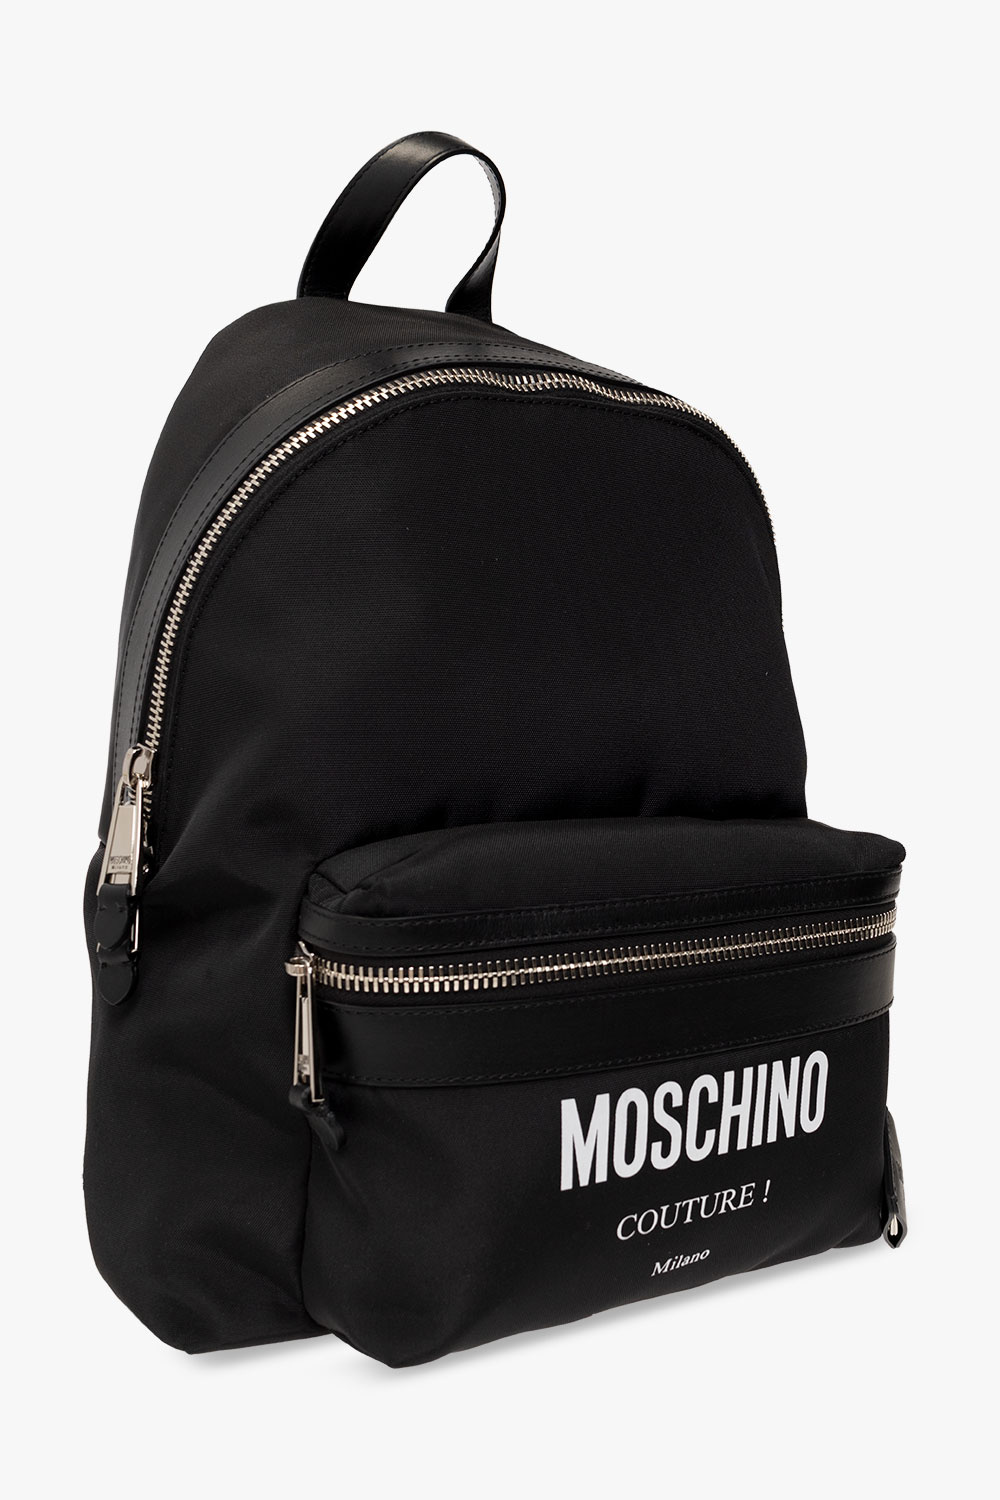 Moschino Rains Base Bag Sn24